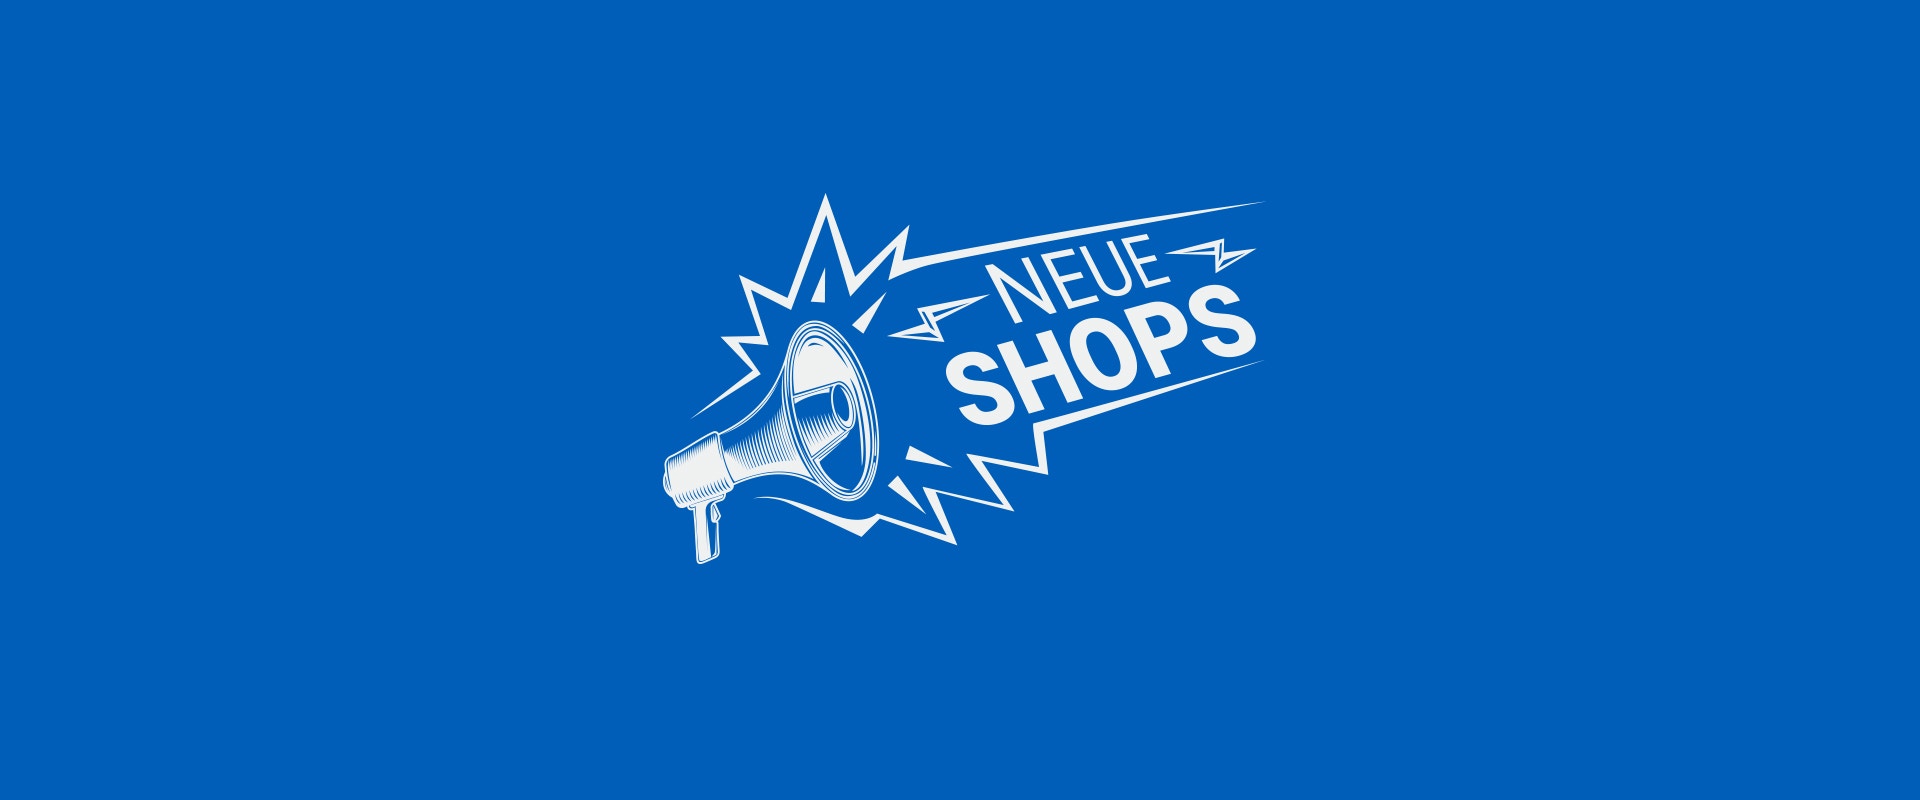 Der Schriftzug "Neue Shops" auf blauem Hintergrund